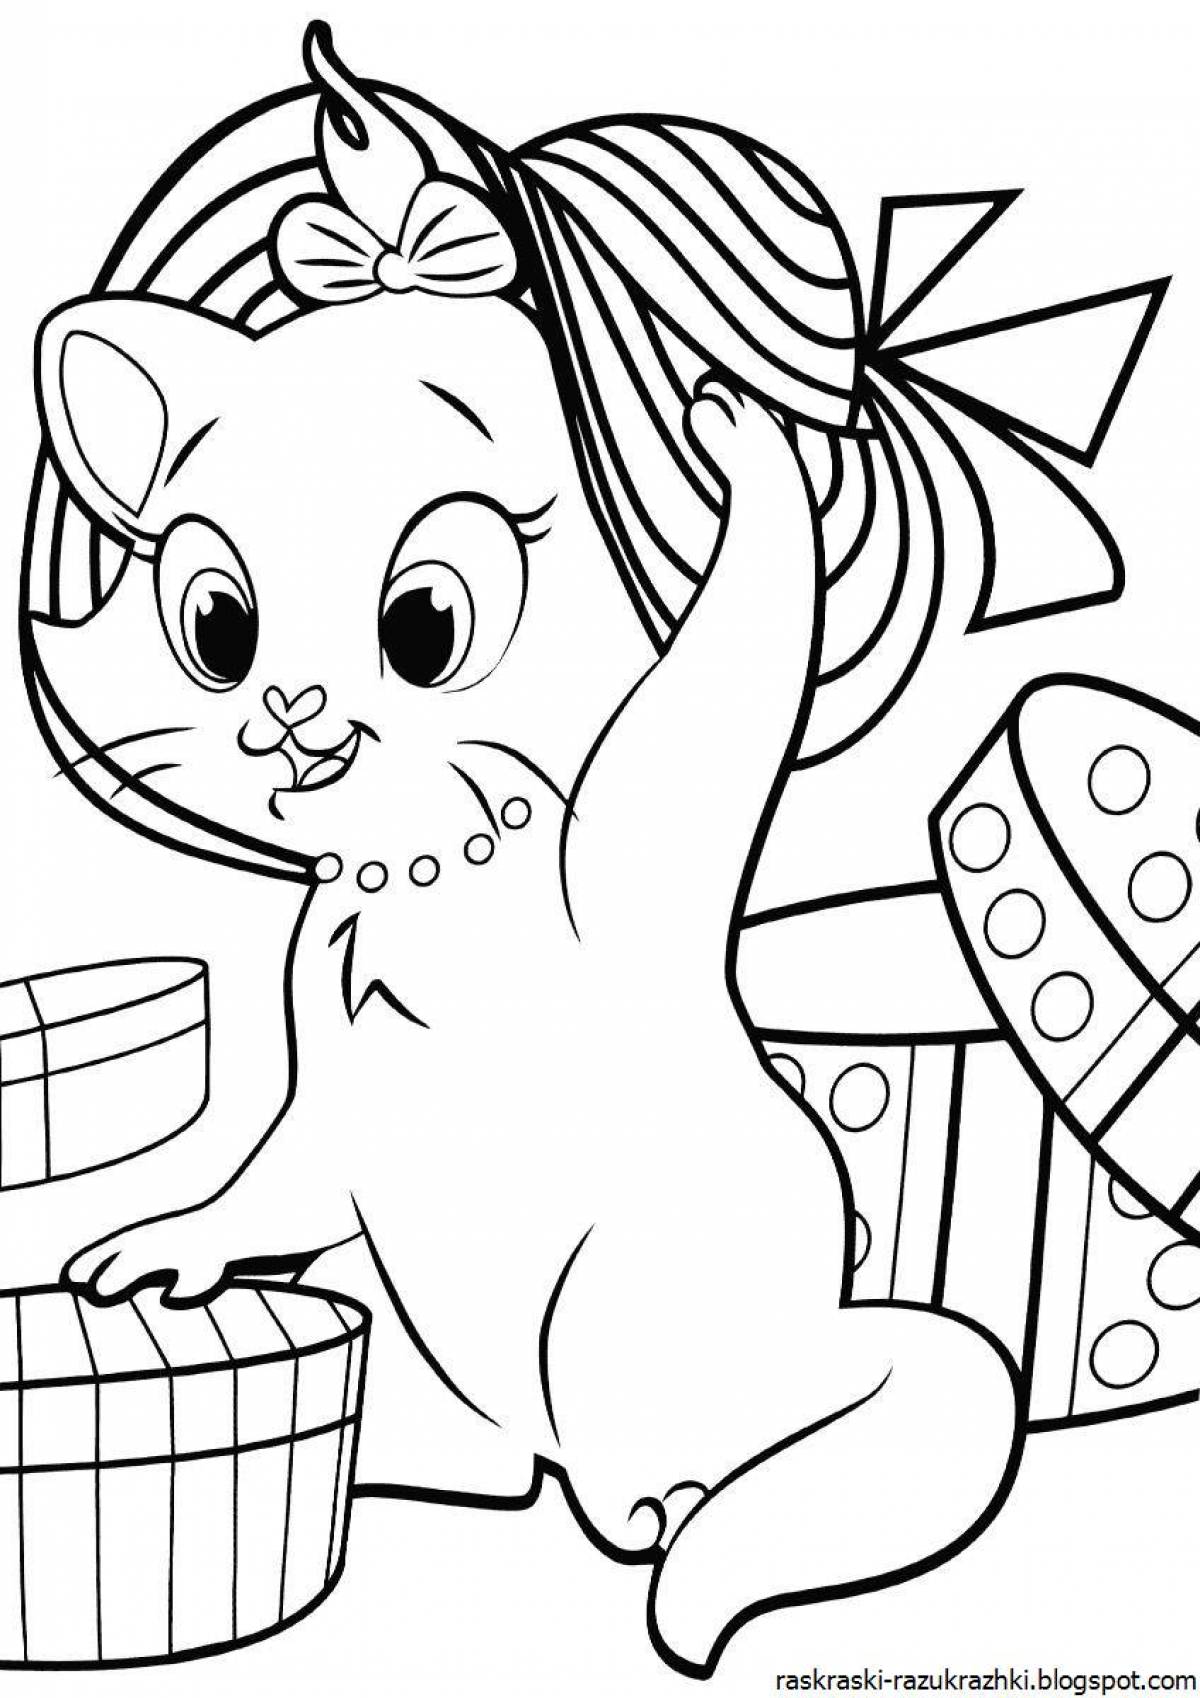 Joyful coloring book for kitten girls